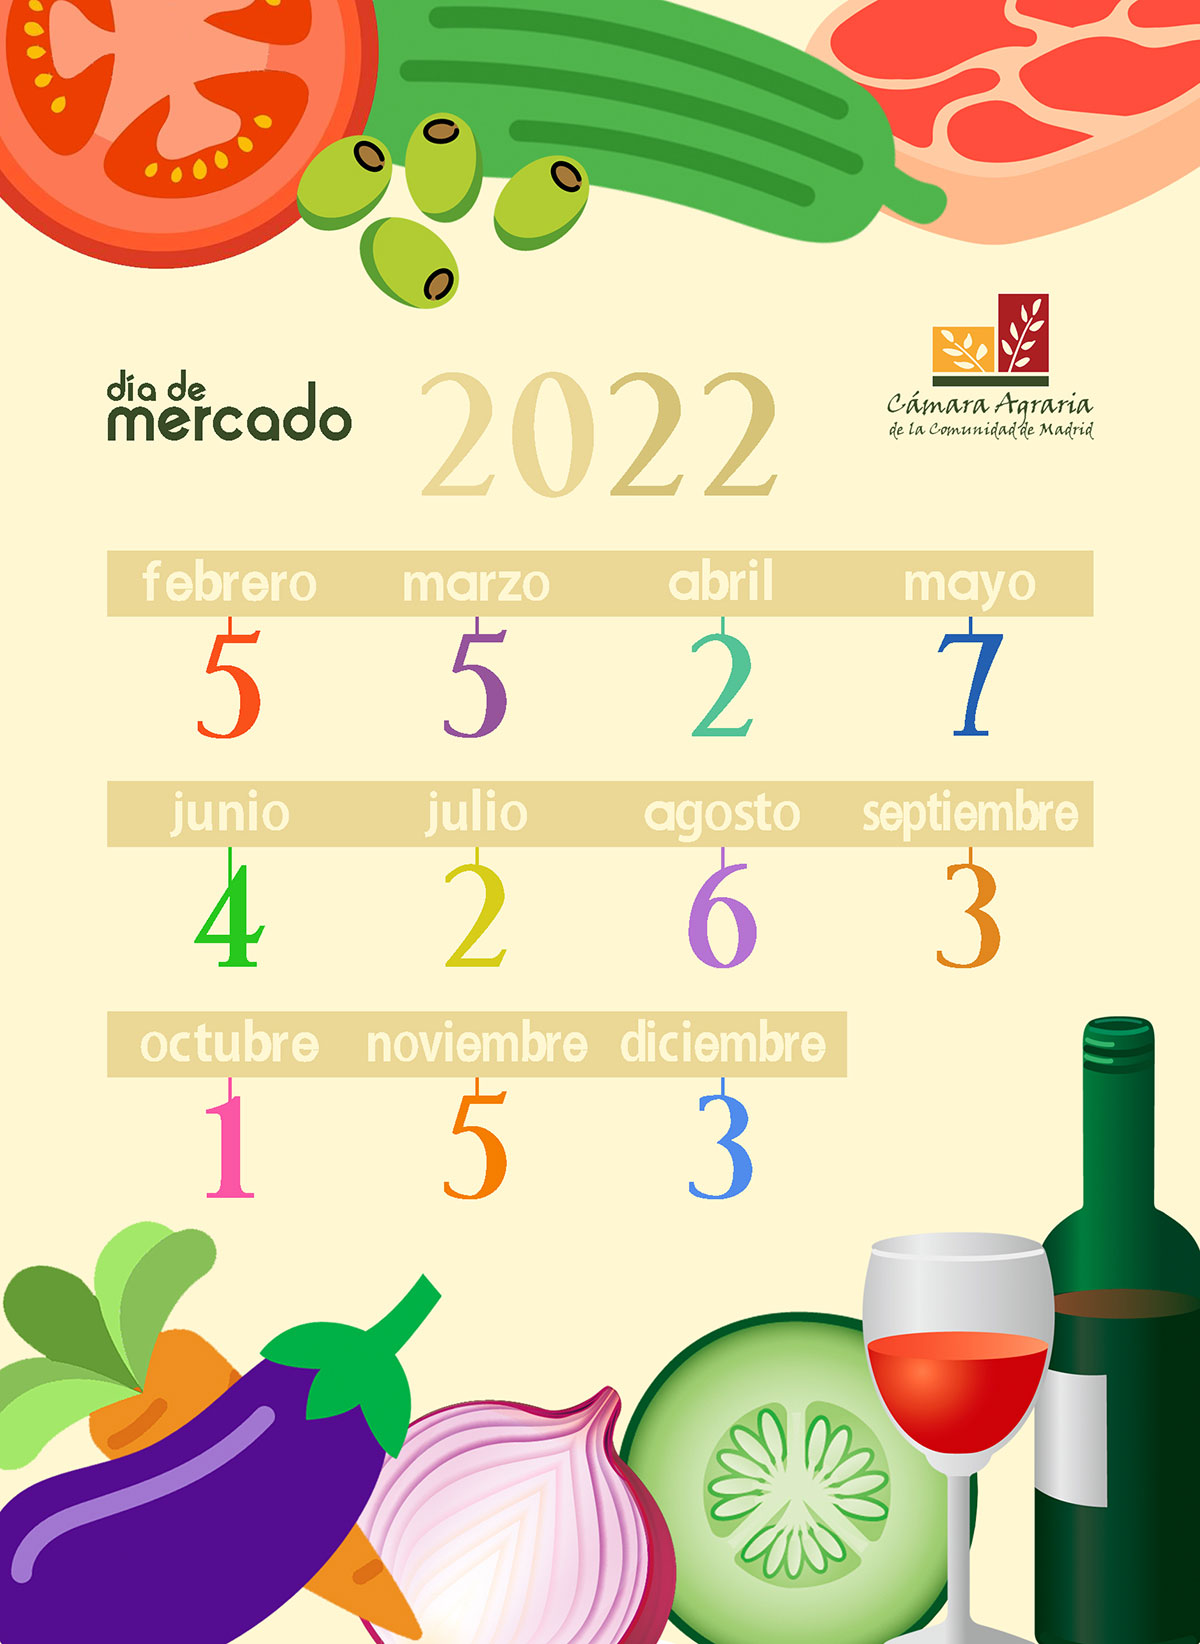 Calendario previsto de los Días de Mercado de la Cámara Agraria en 2022